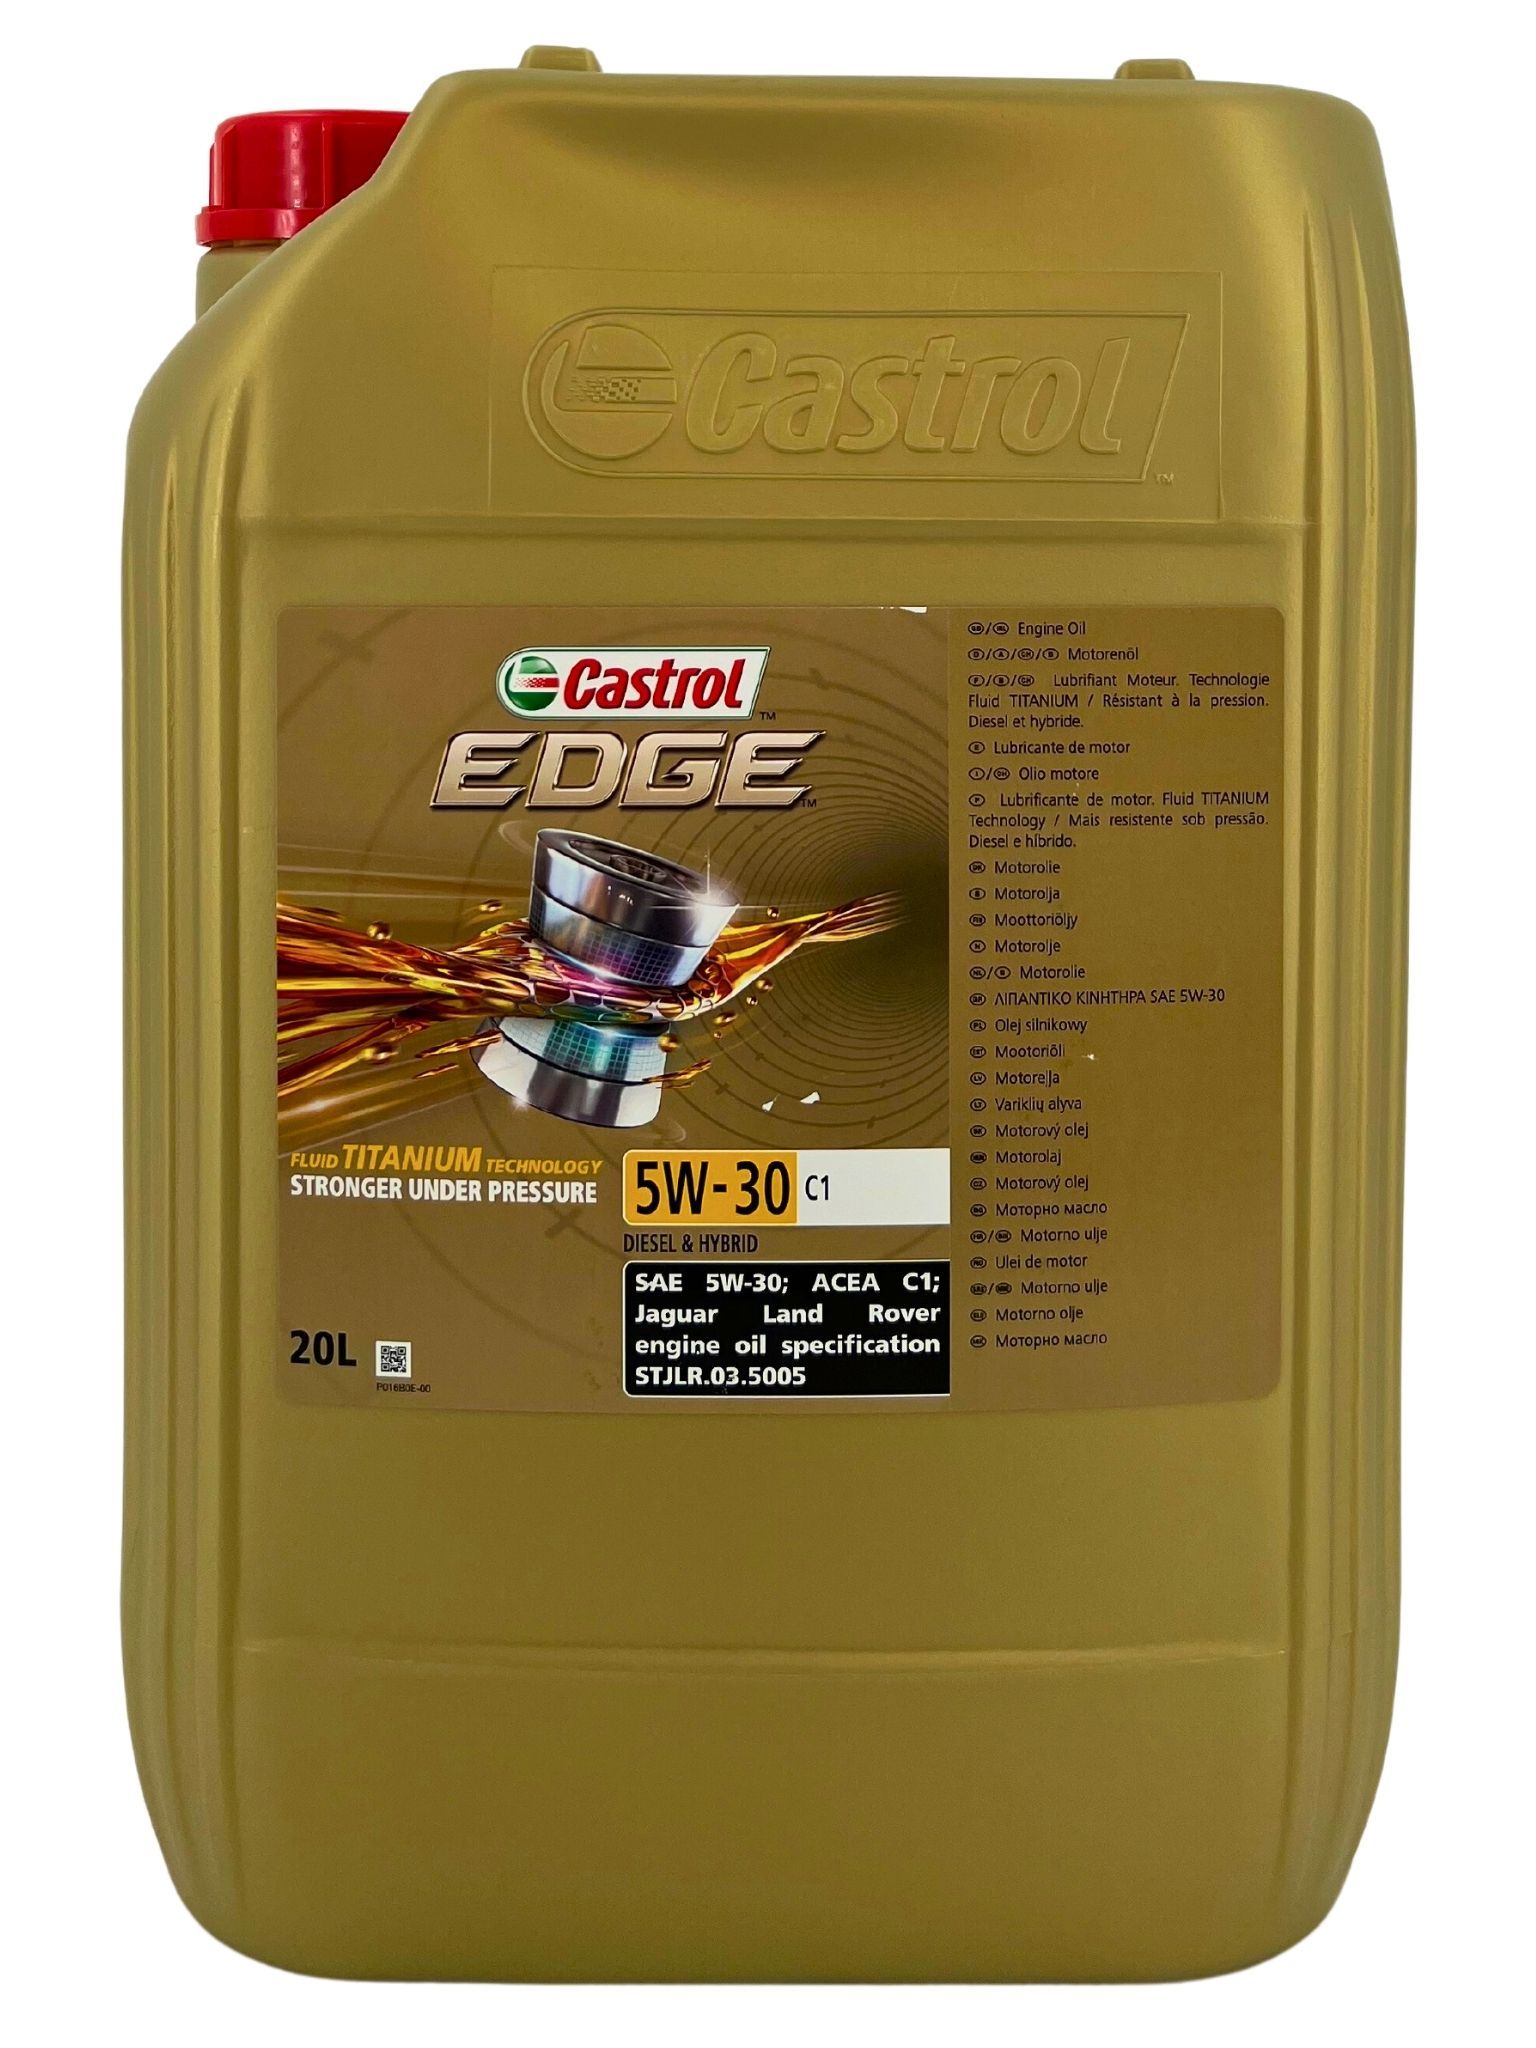 Castrol Edge Fluid Titanium 5W-30 C1 20 Liter